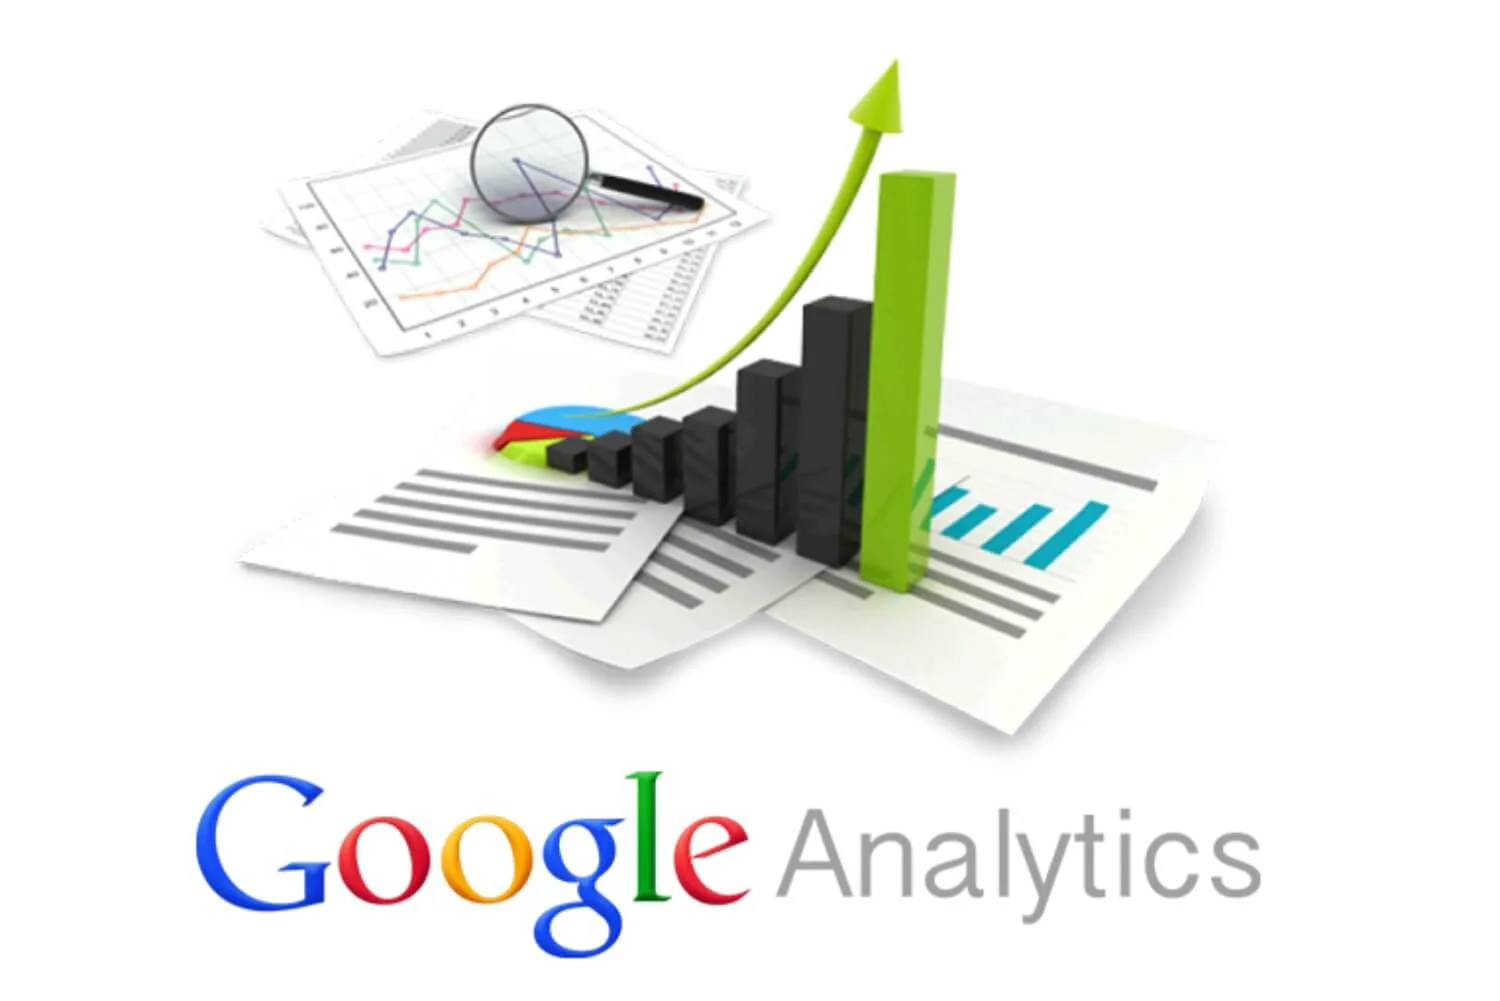 Google Analytic giúp dễ dàng theo dõi lưu lượng truy cập online